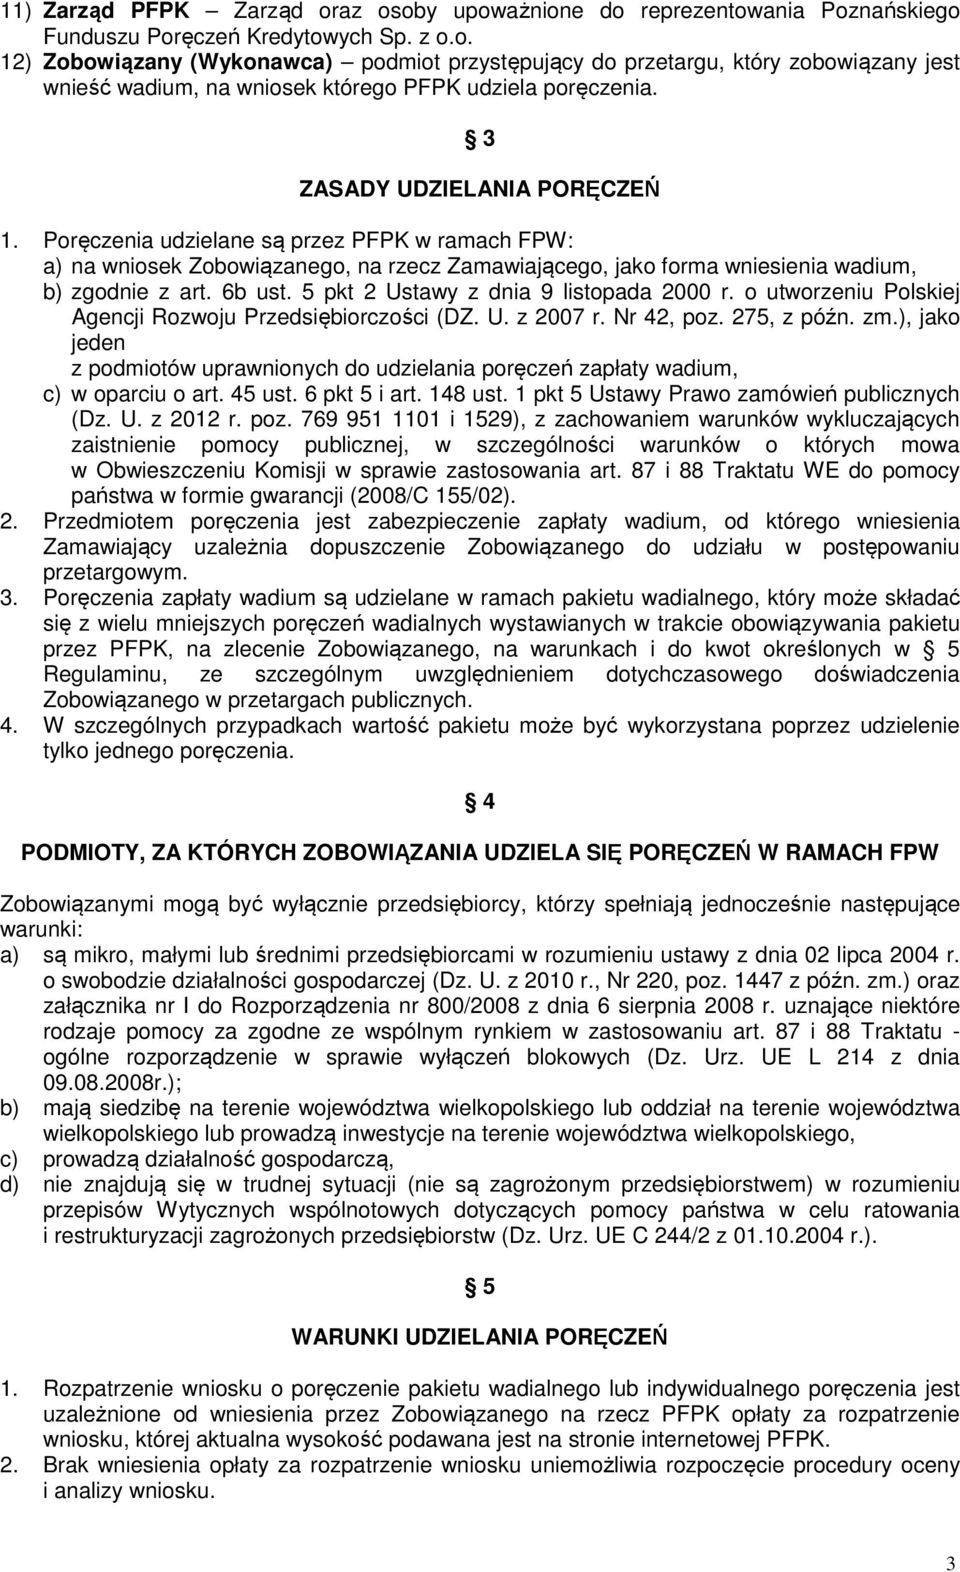 5 pkt 2 Ustawy z dnia 9 listopada 2000 r. o utworzeniu Polskiej Agencji Rozwoju Przedsiębiorczości (DZ. U. z 2007 r. Nr 42, poz. 275, z późn. zm.